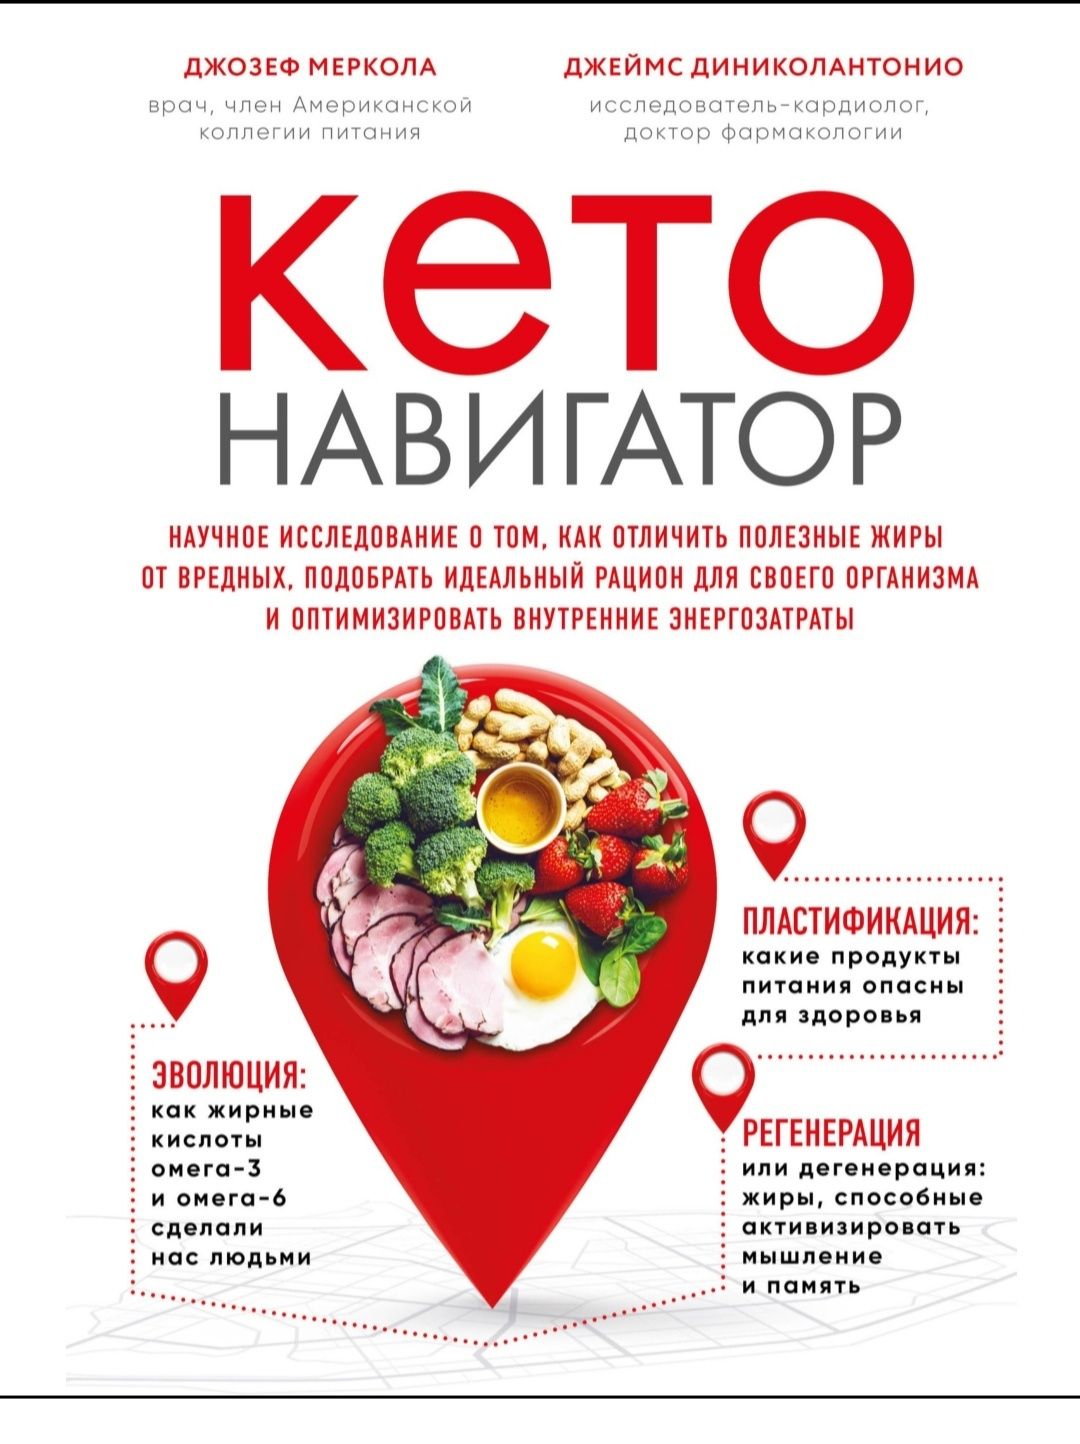 Книги про Кето-диета. Смотрите фото
Революционная система питания, кот